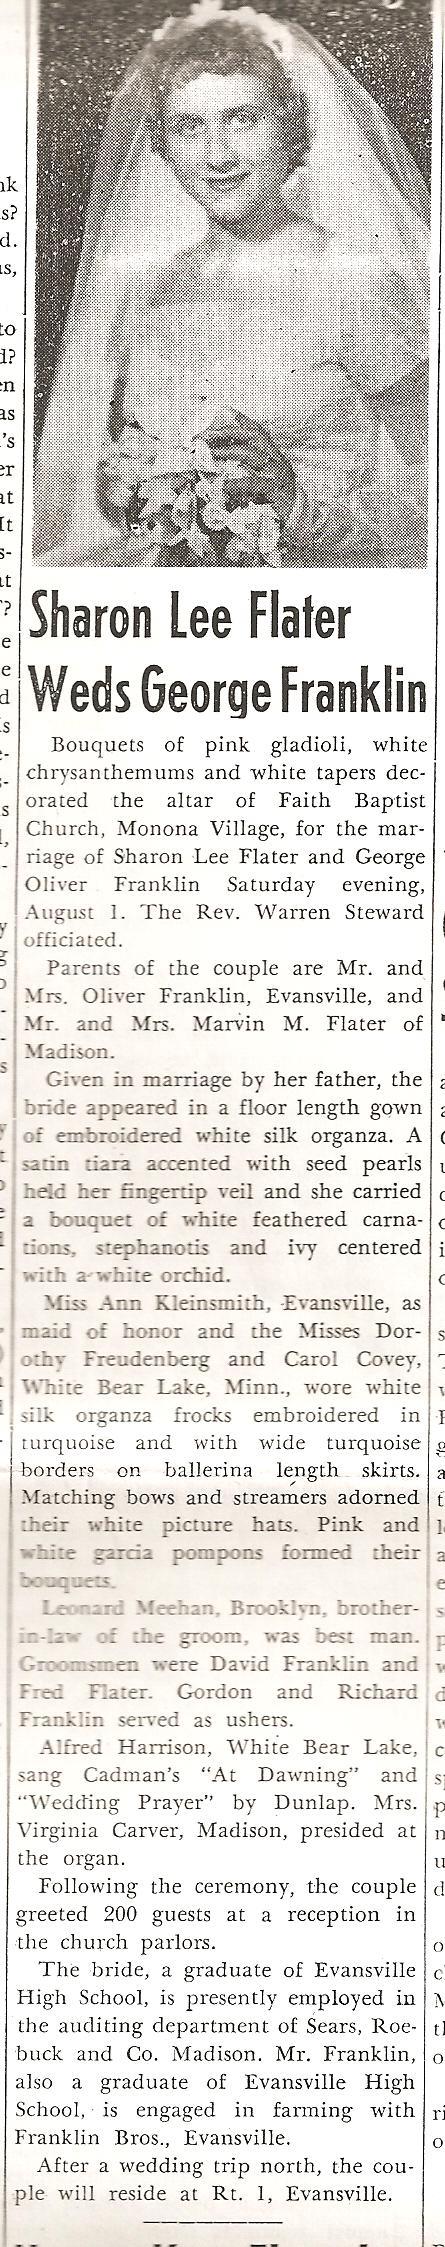 August 13, 1959, Evansville